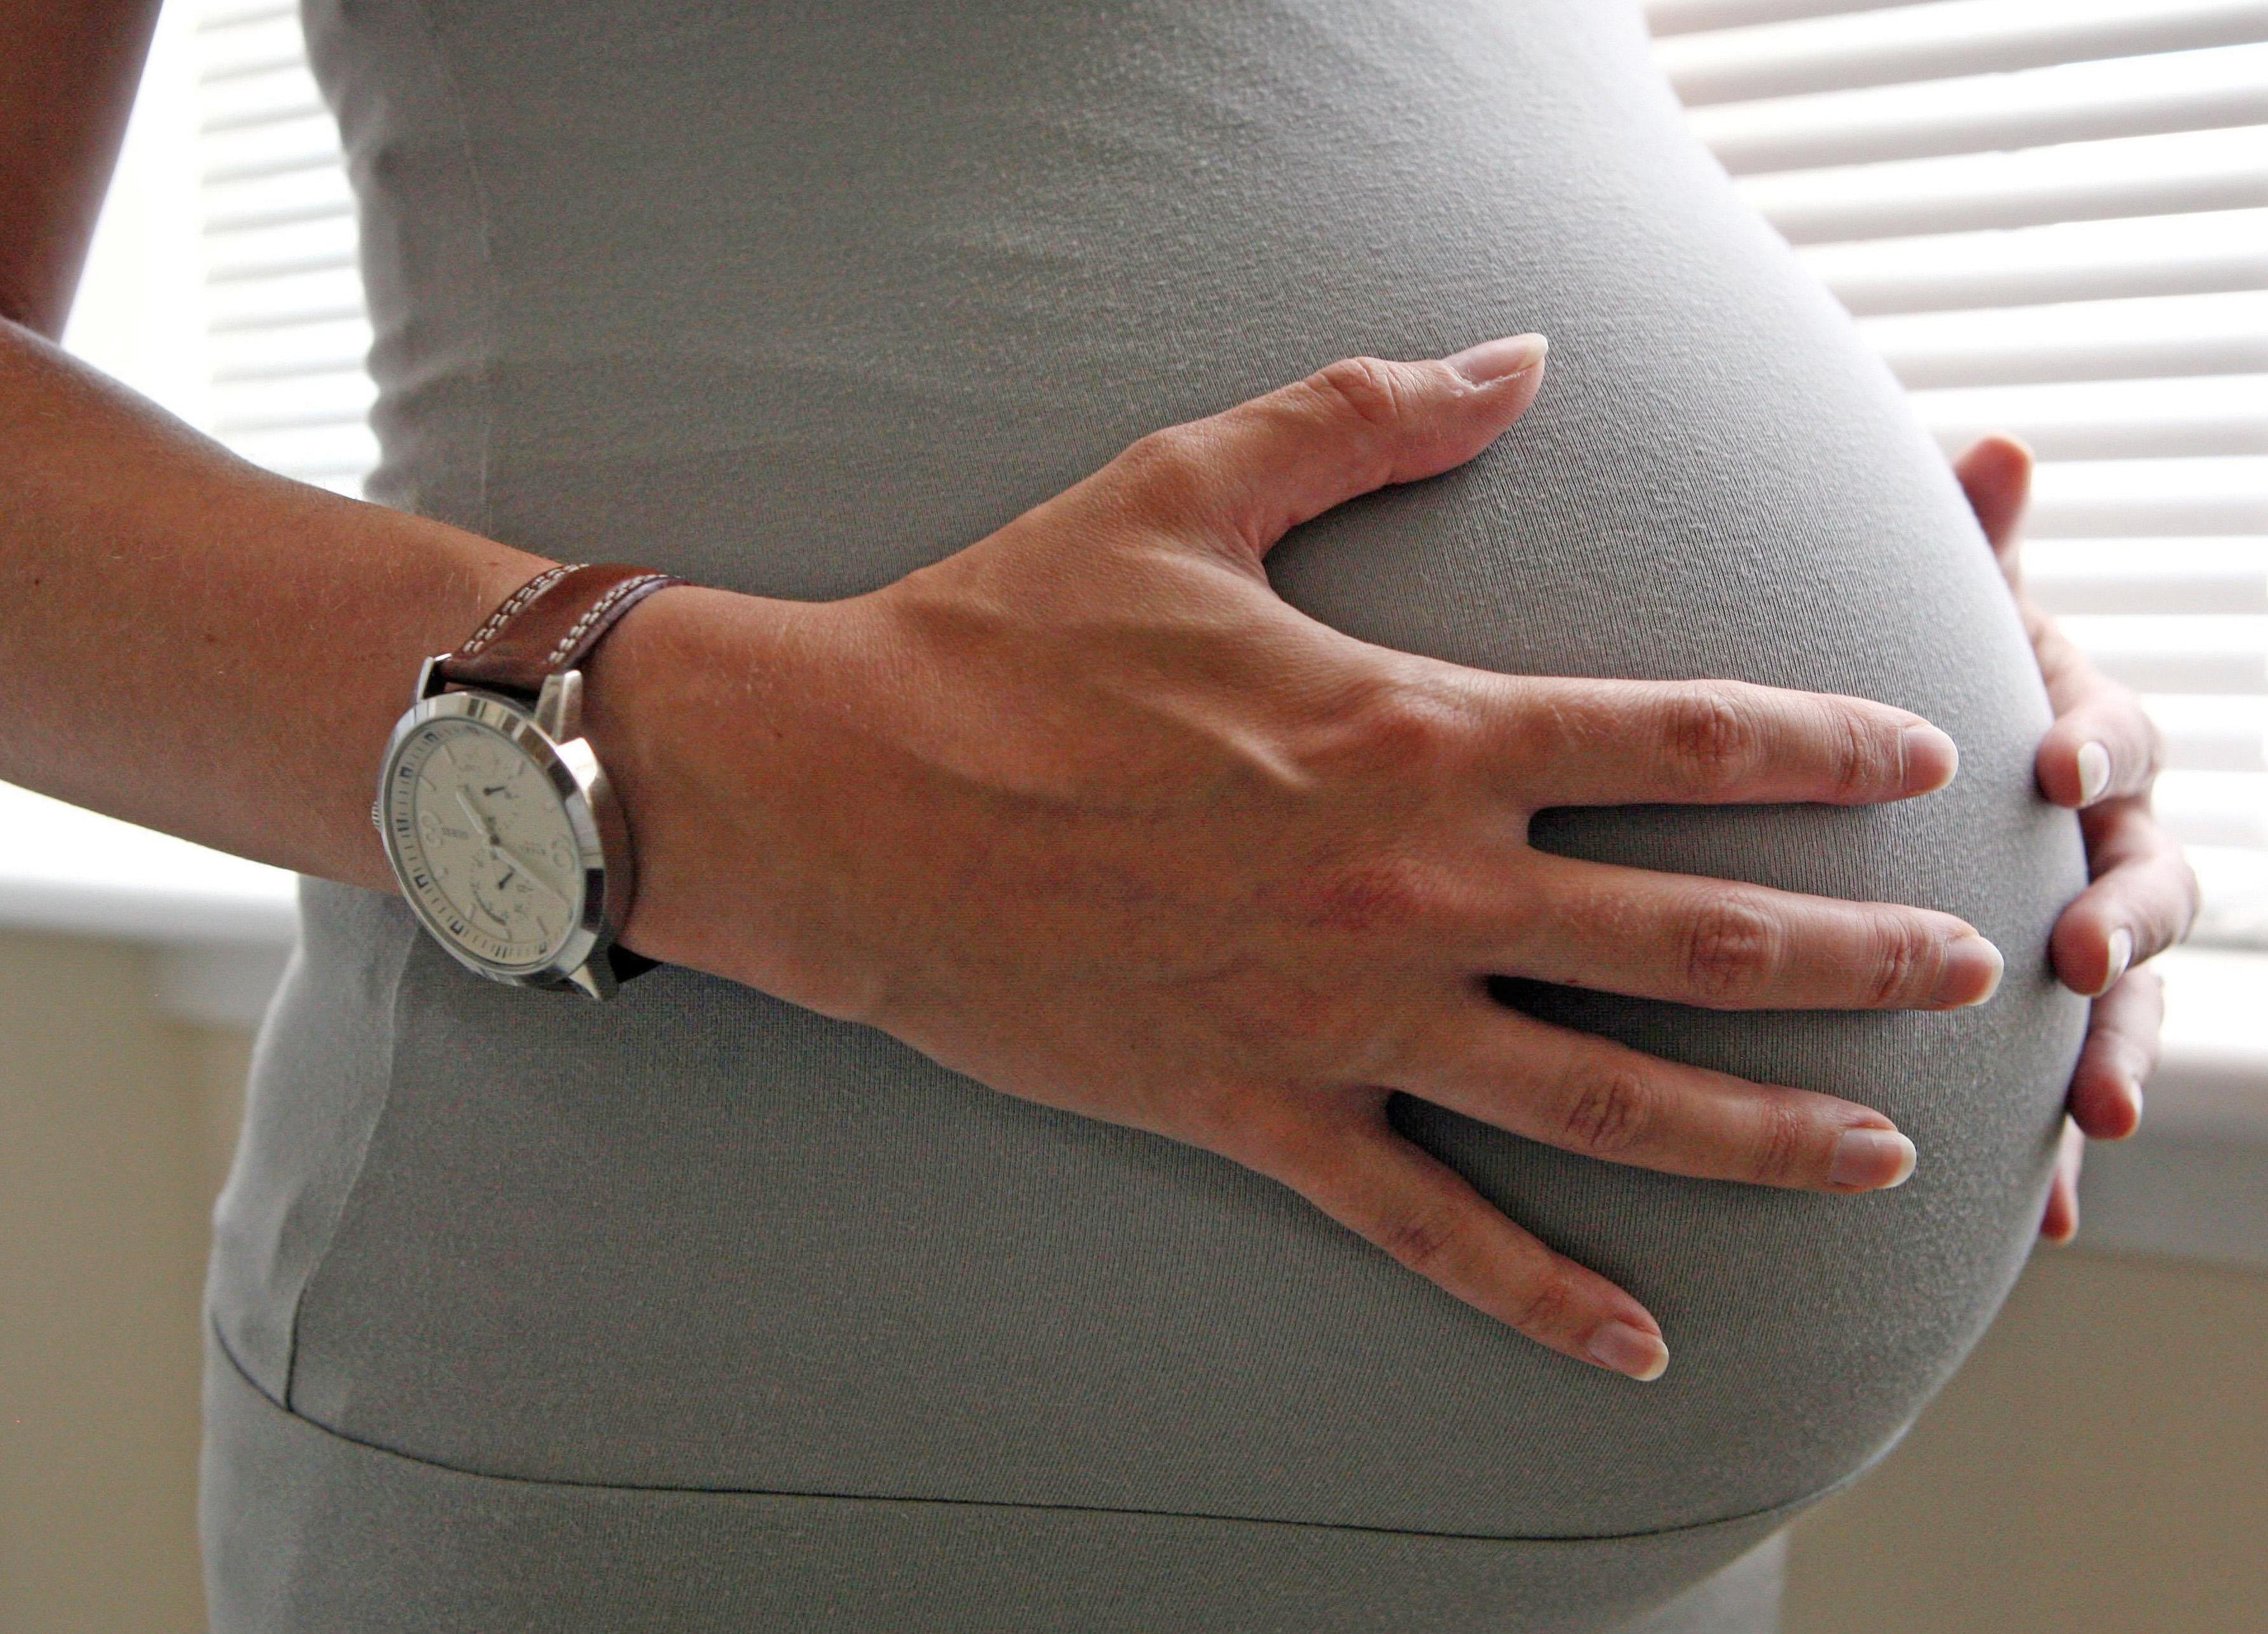 47 per cent of pregnant women are un vaccinated